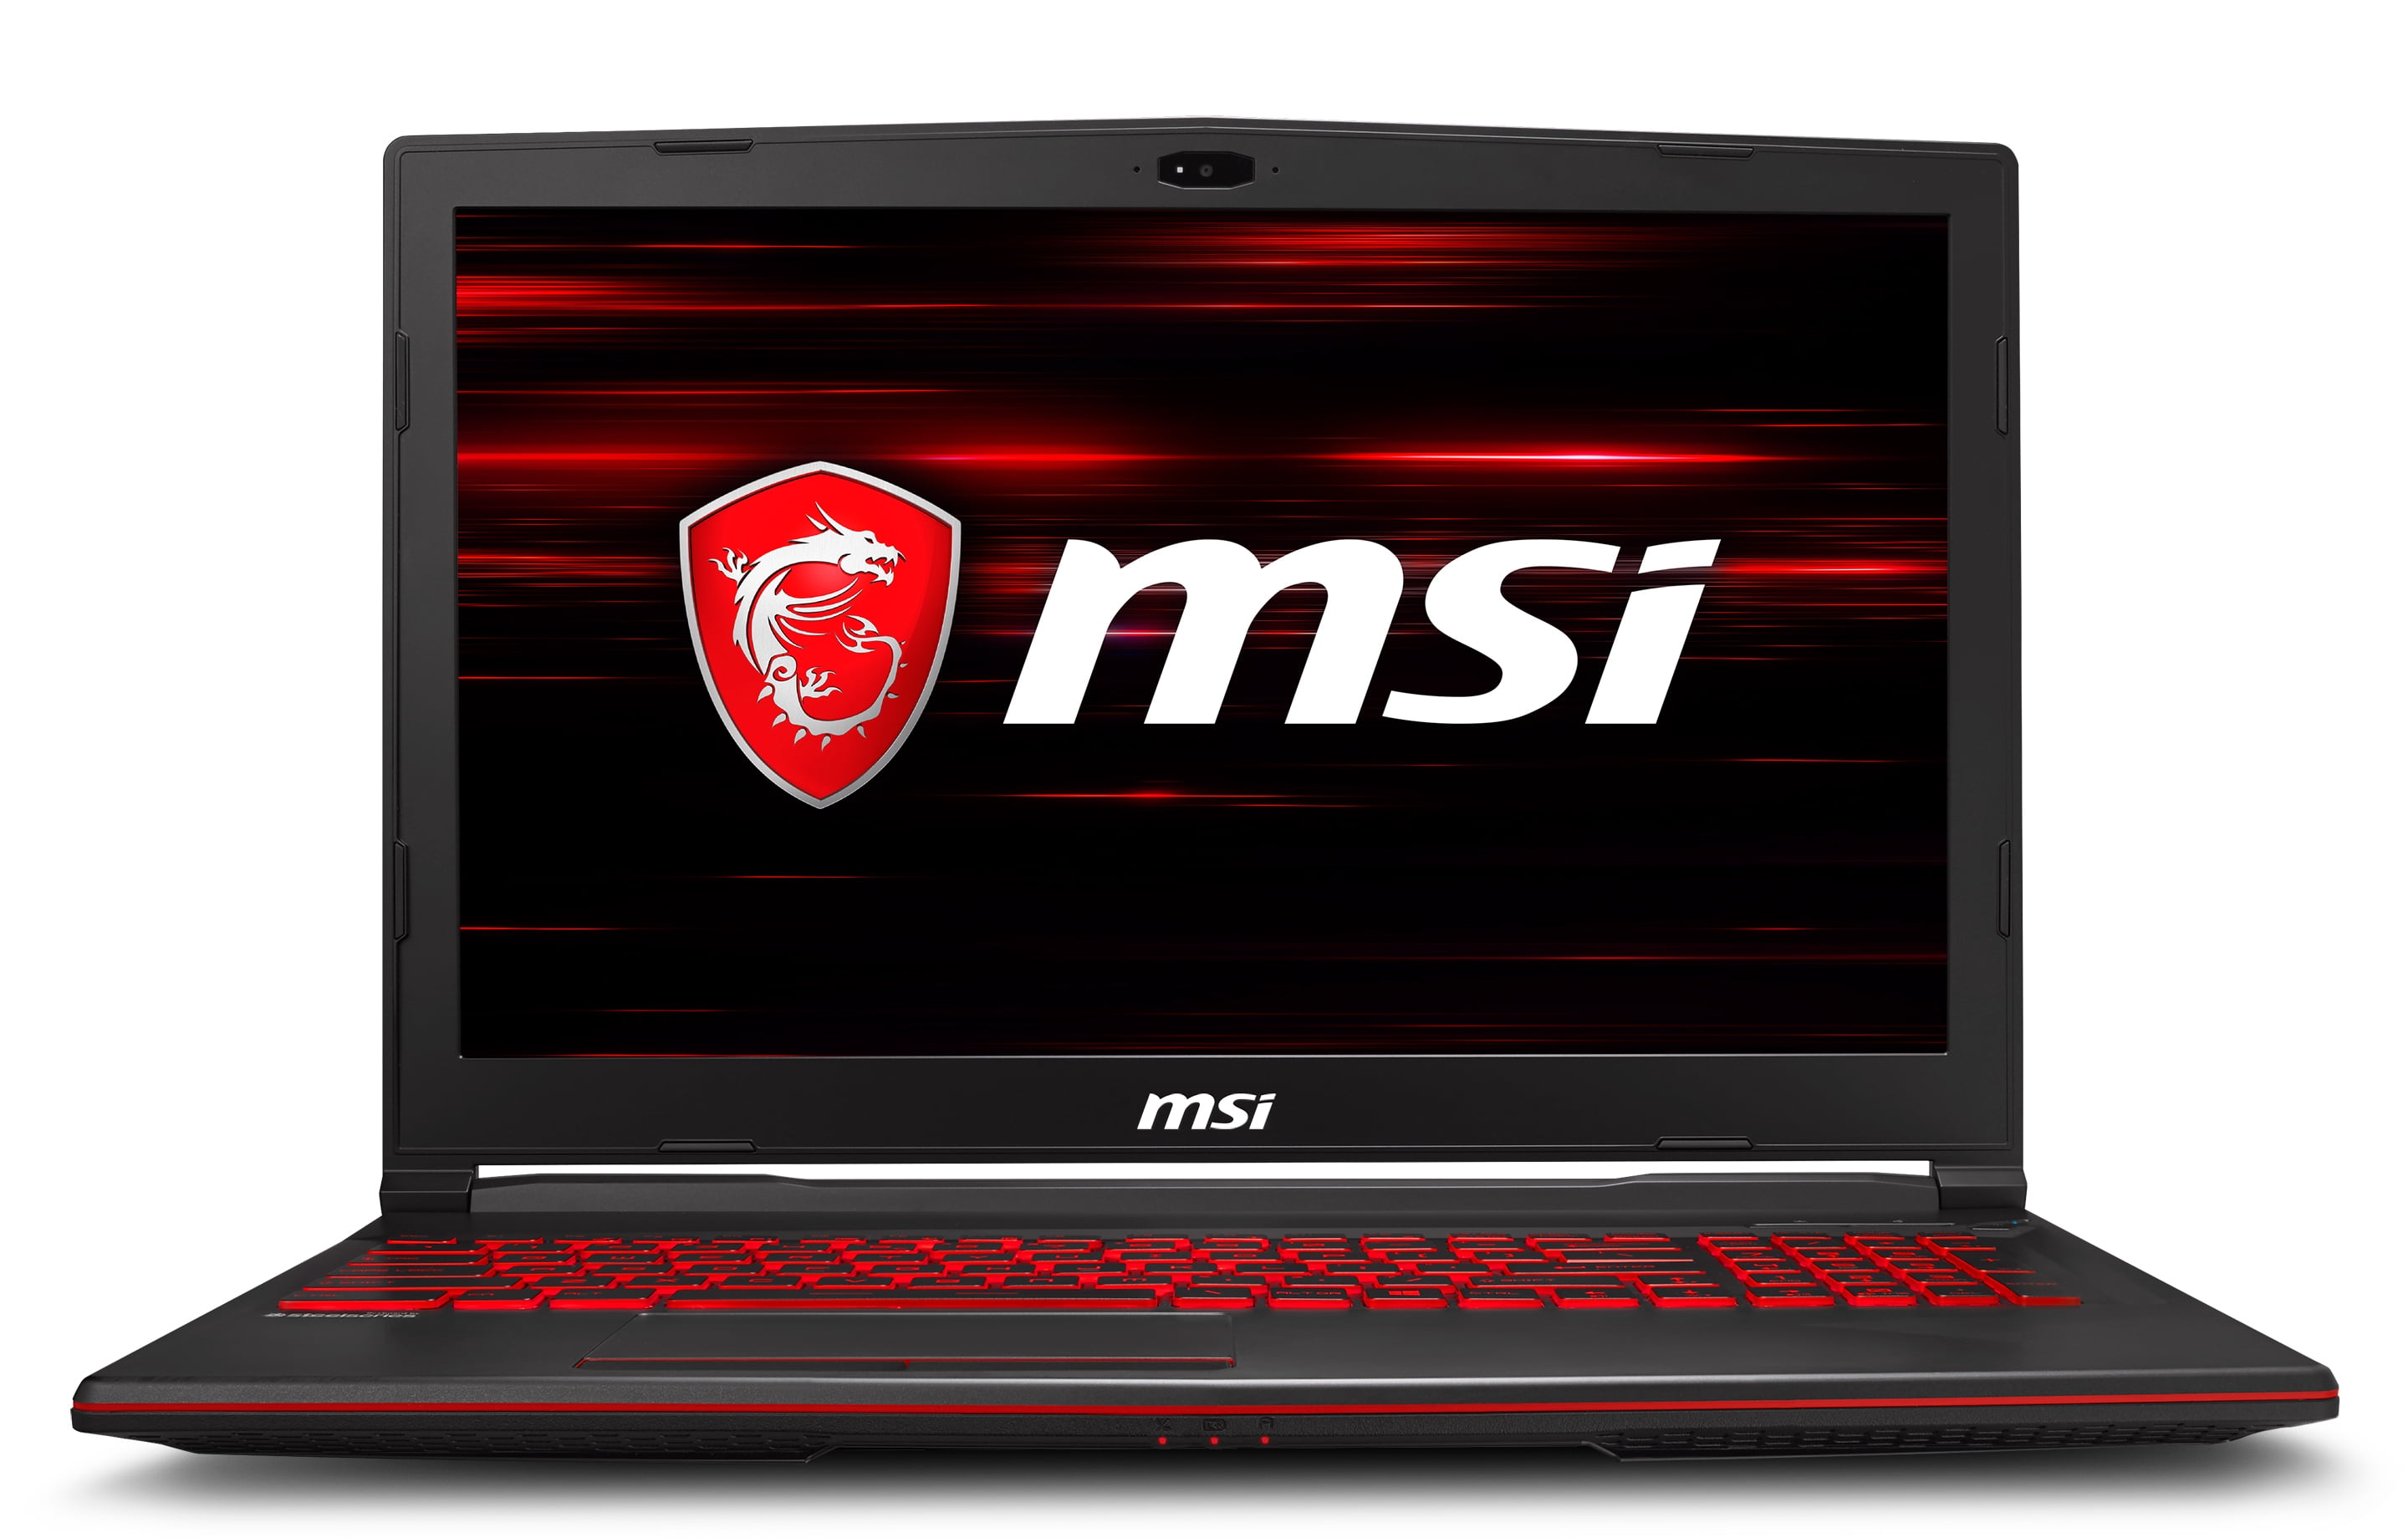 MSI GL63 Gaming Laptop 15.6